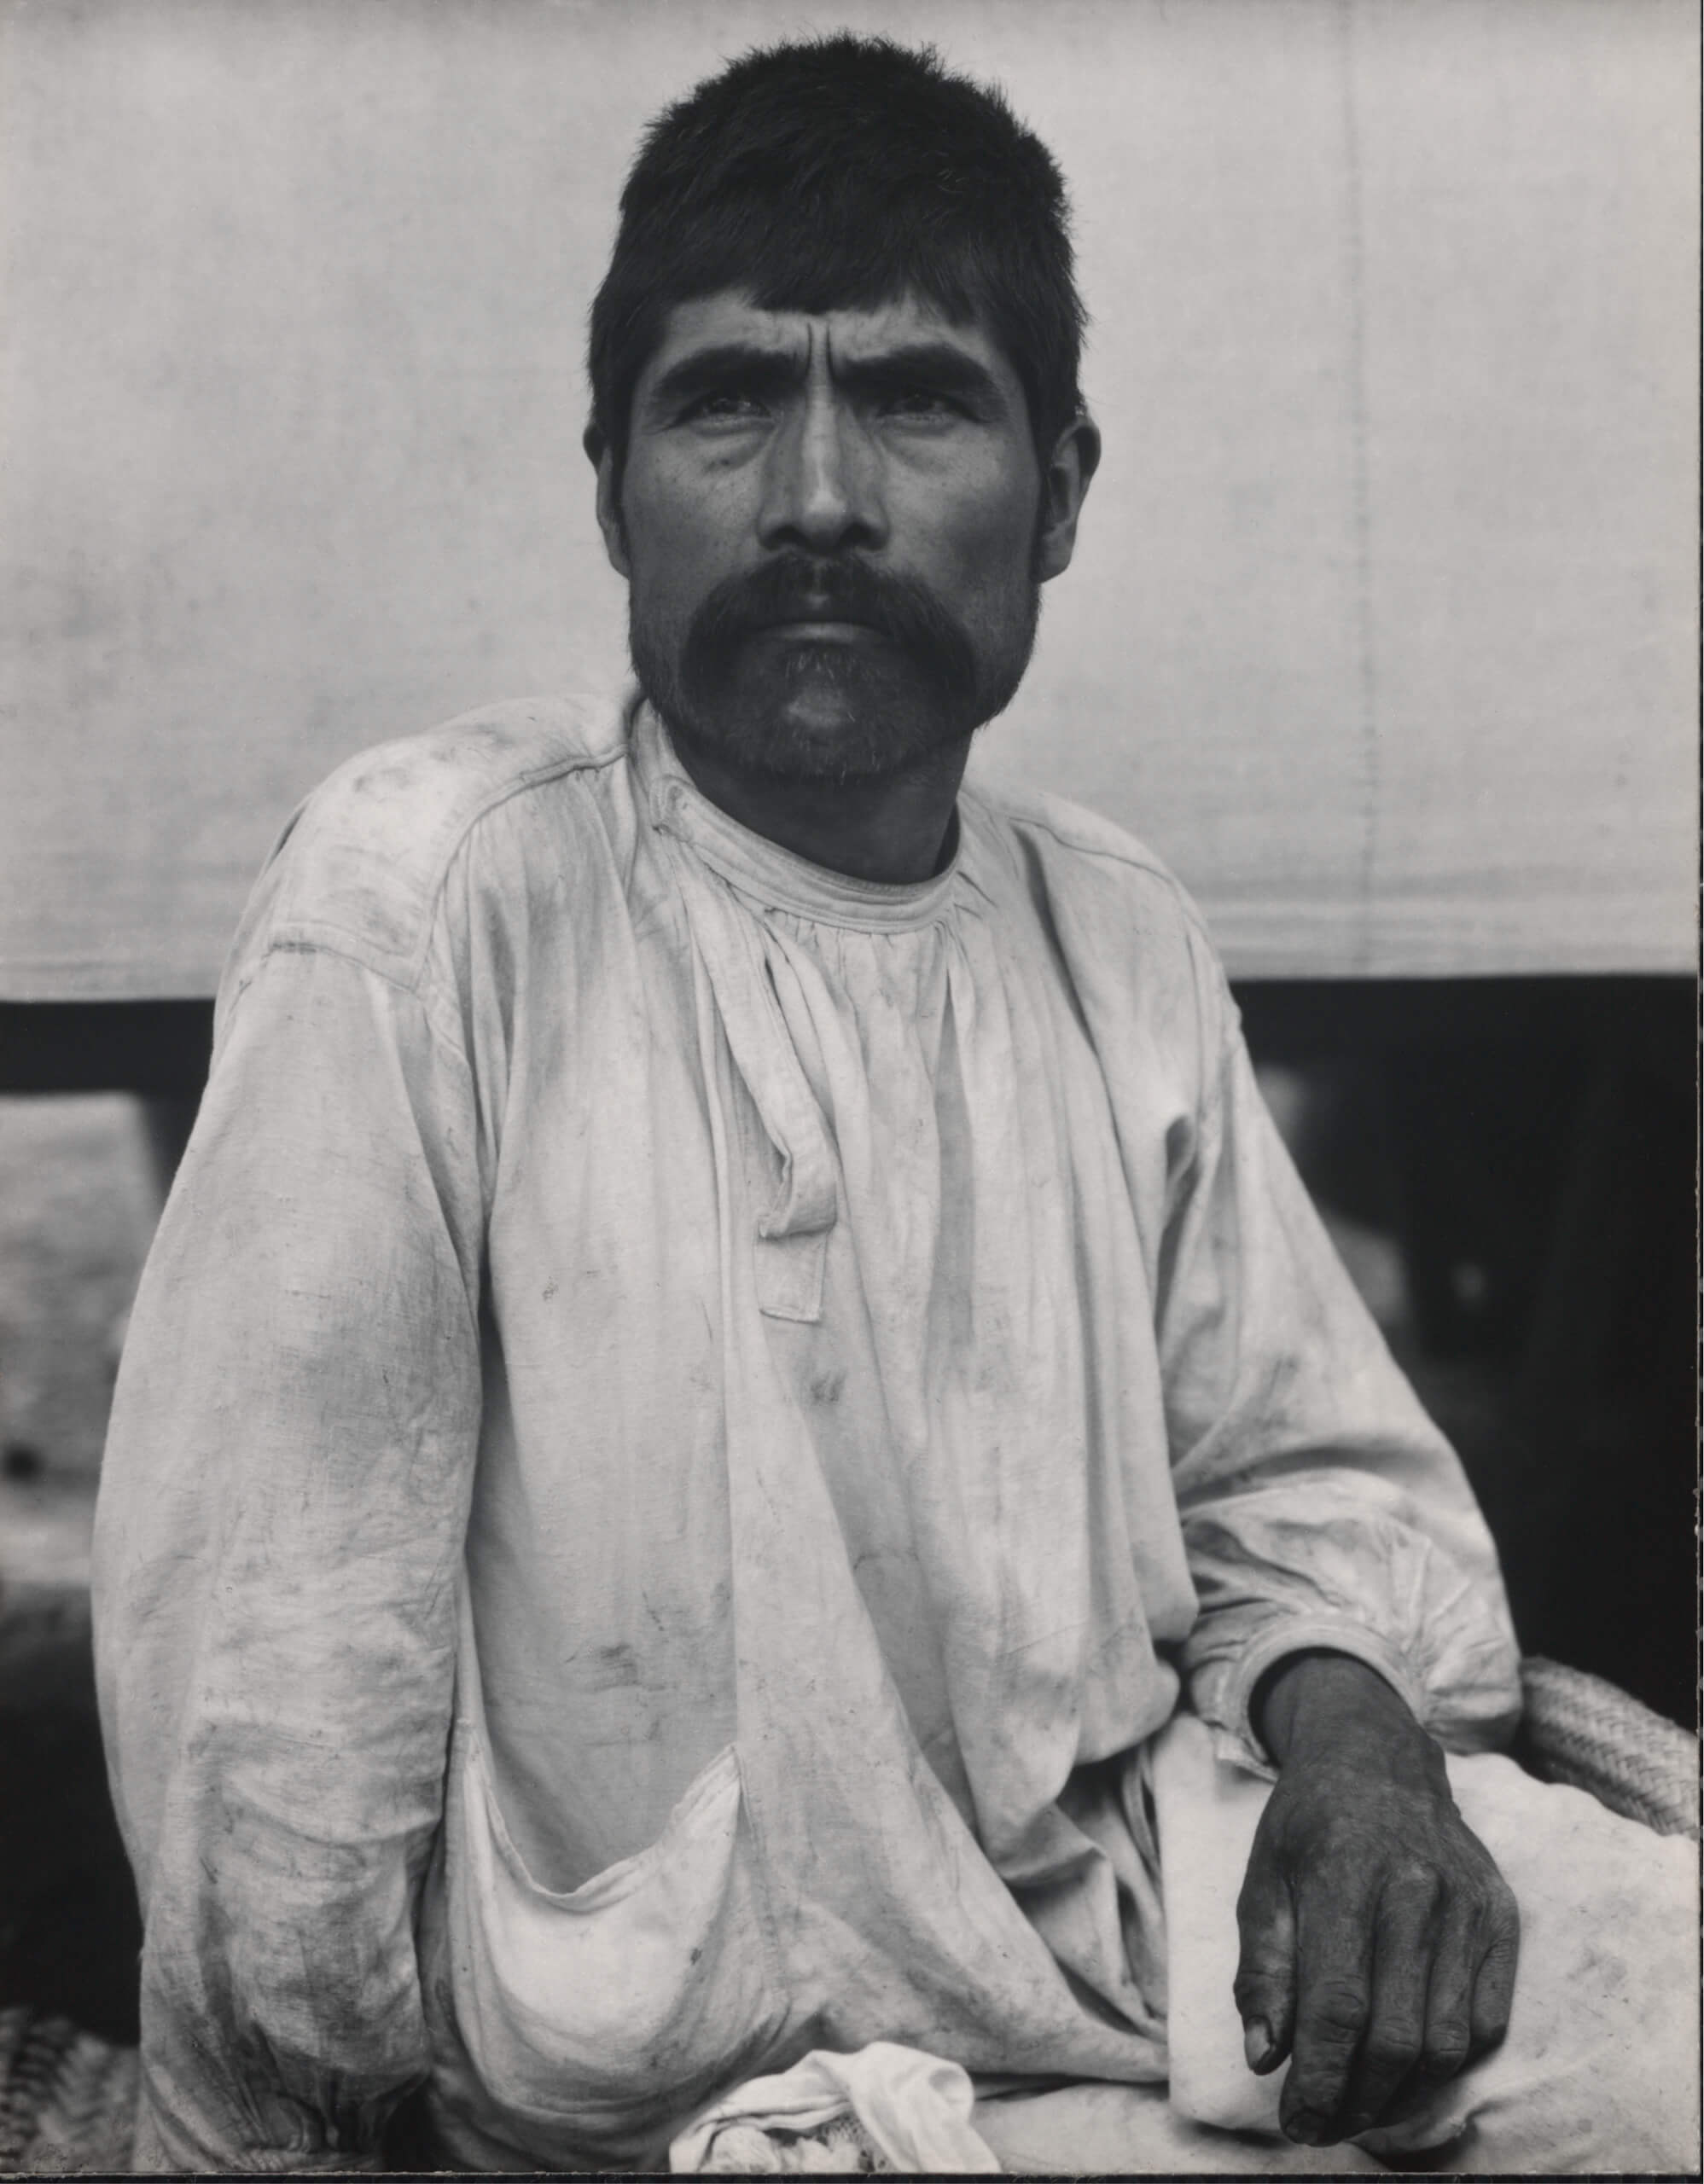 Man [Hombre], Tenancingo de Degollado, Estado de México | El murmullo de los rostros. Paul Strand en México | Museo Amparo, Puebla